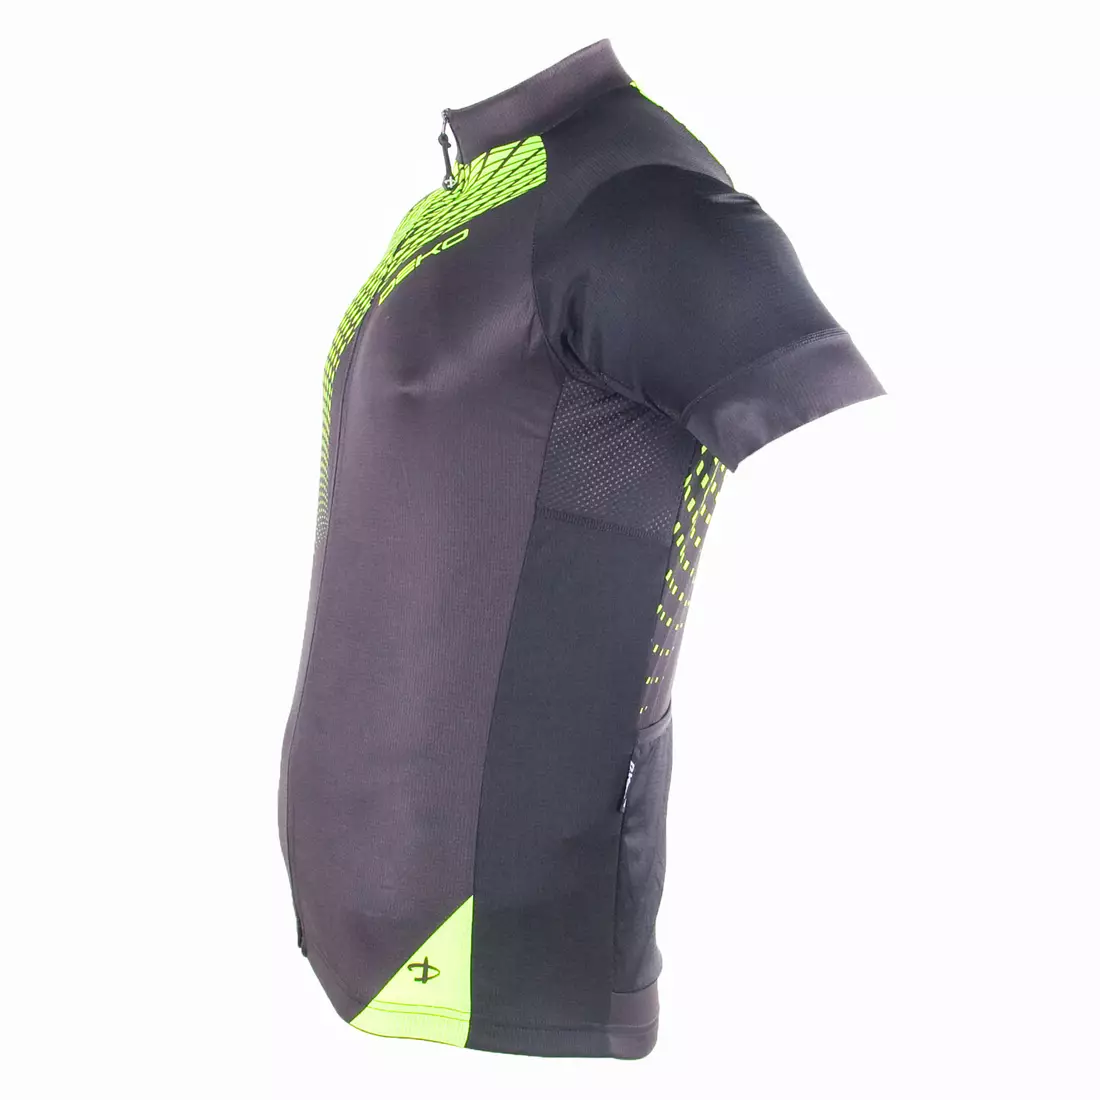 DEKO SET2 pánský cyklistický dres černý fluor zelený